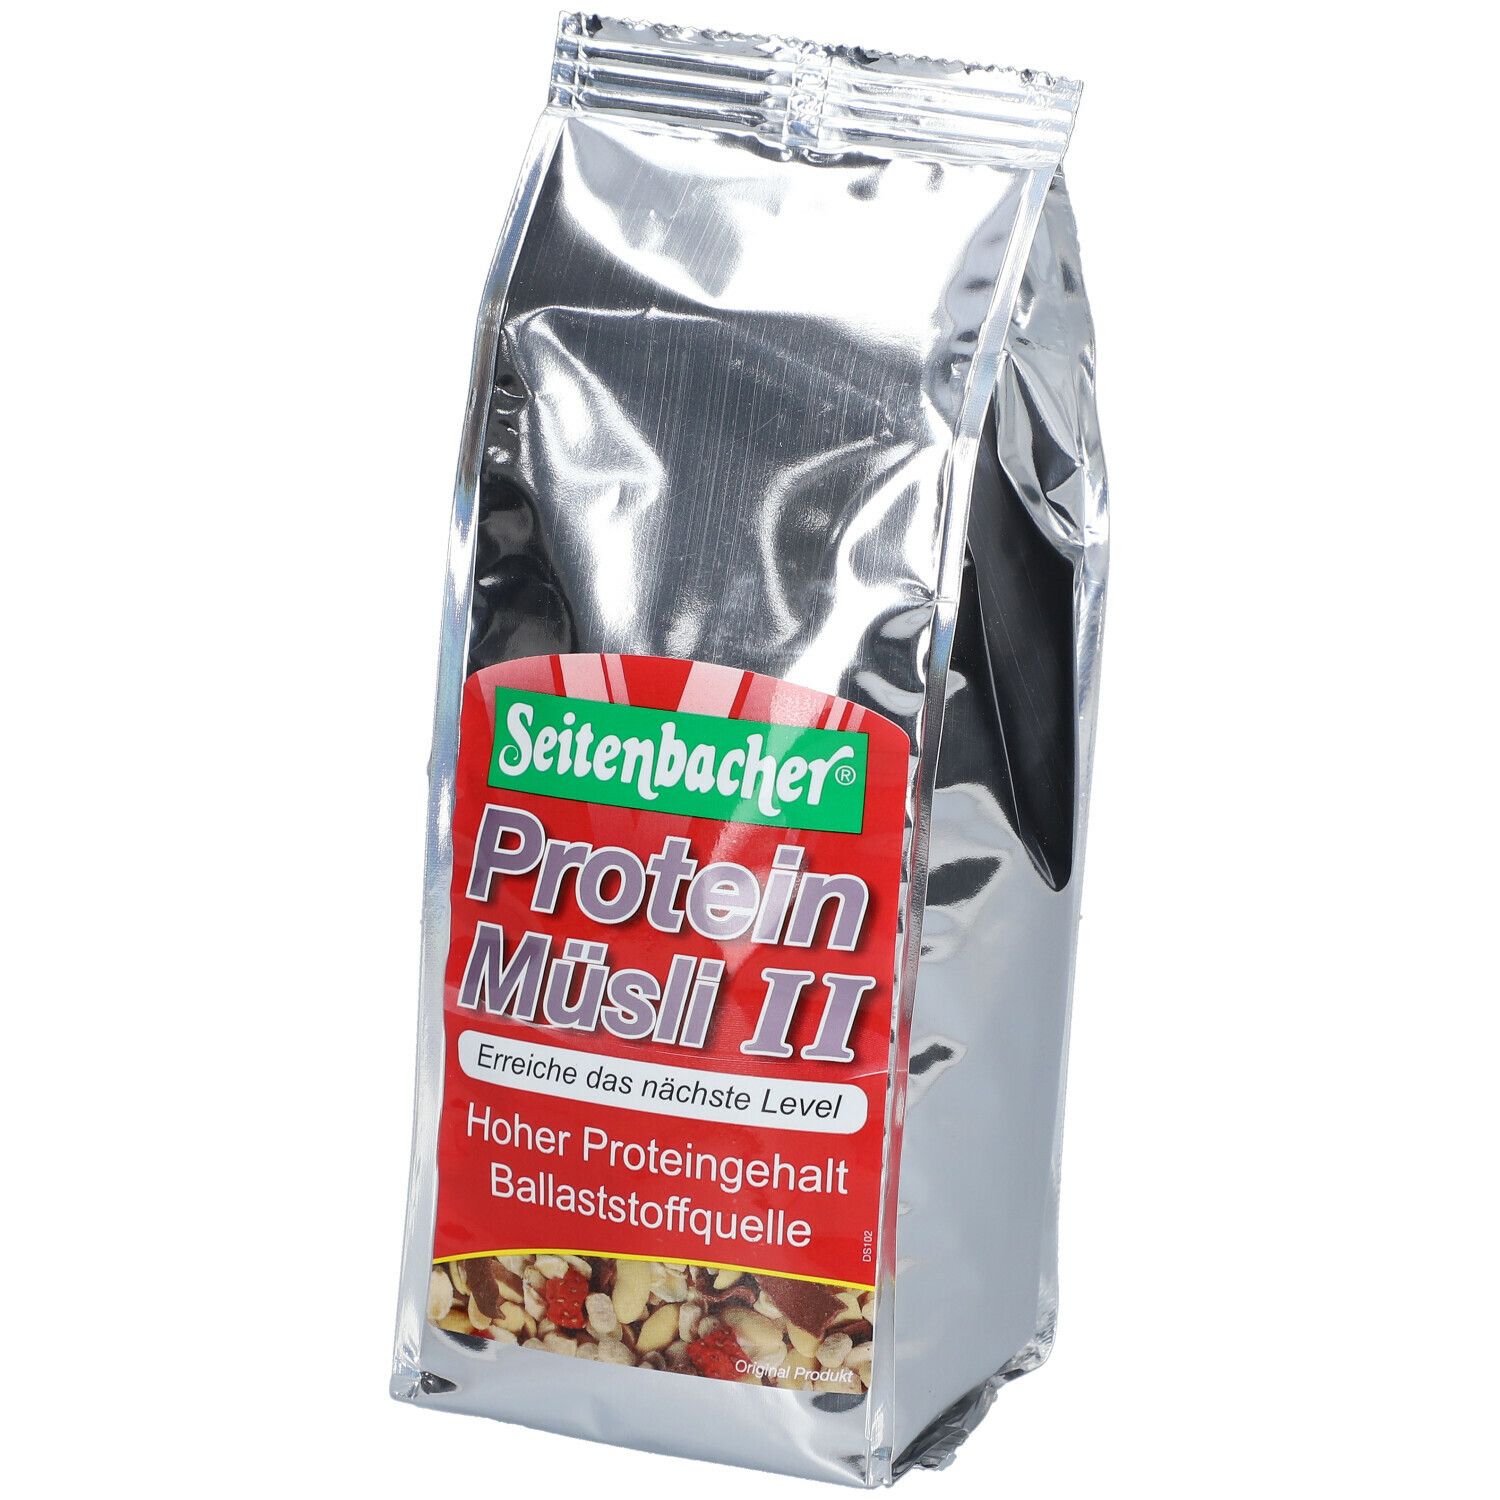 Seitenbacher® Protein Müsli II